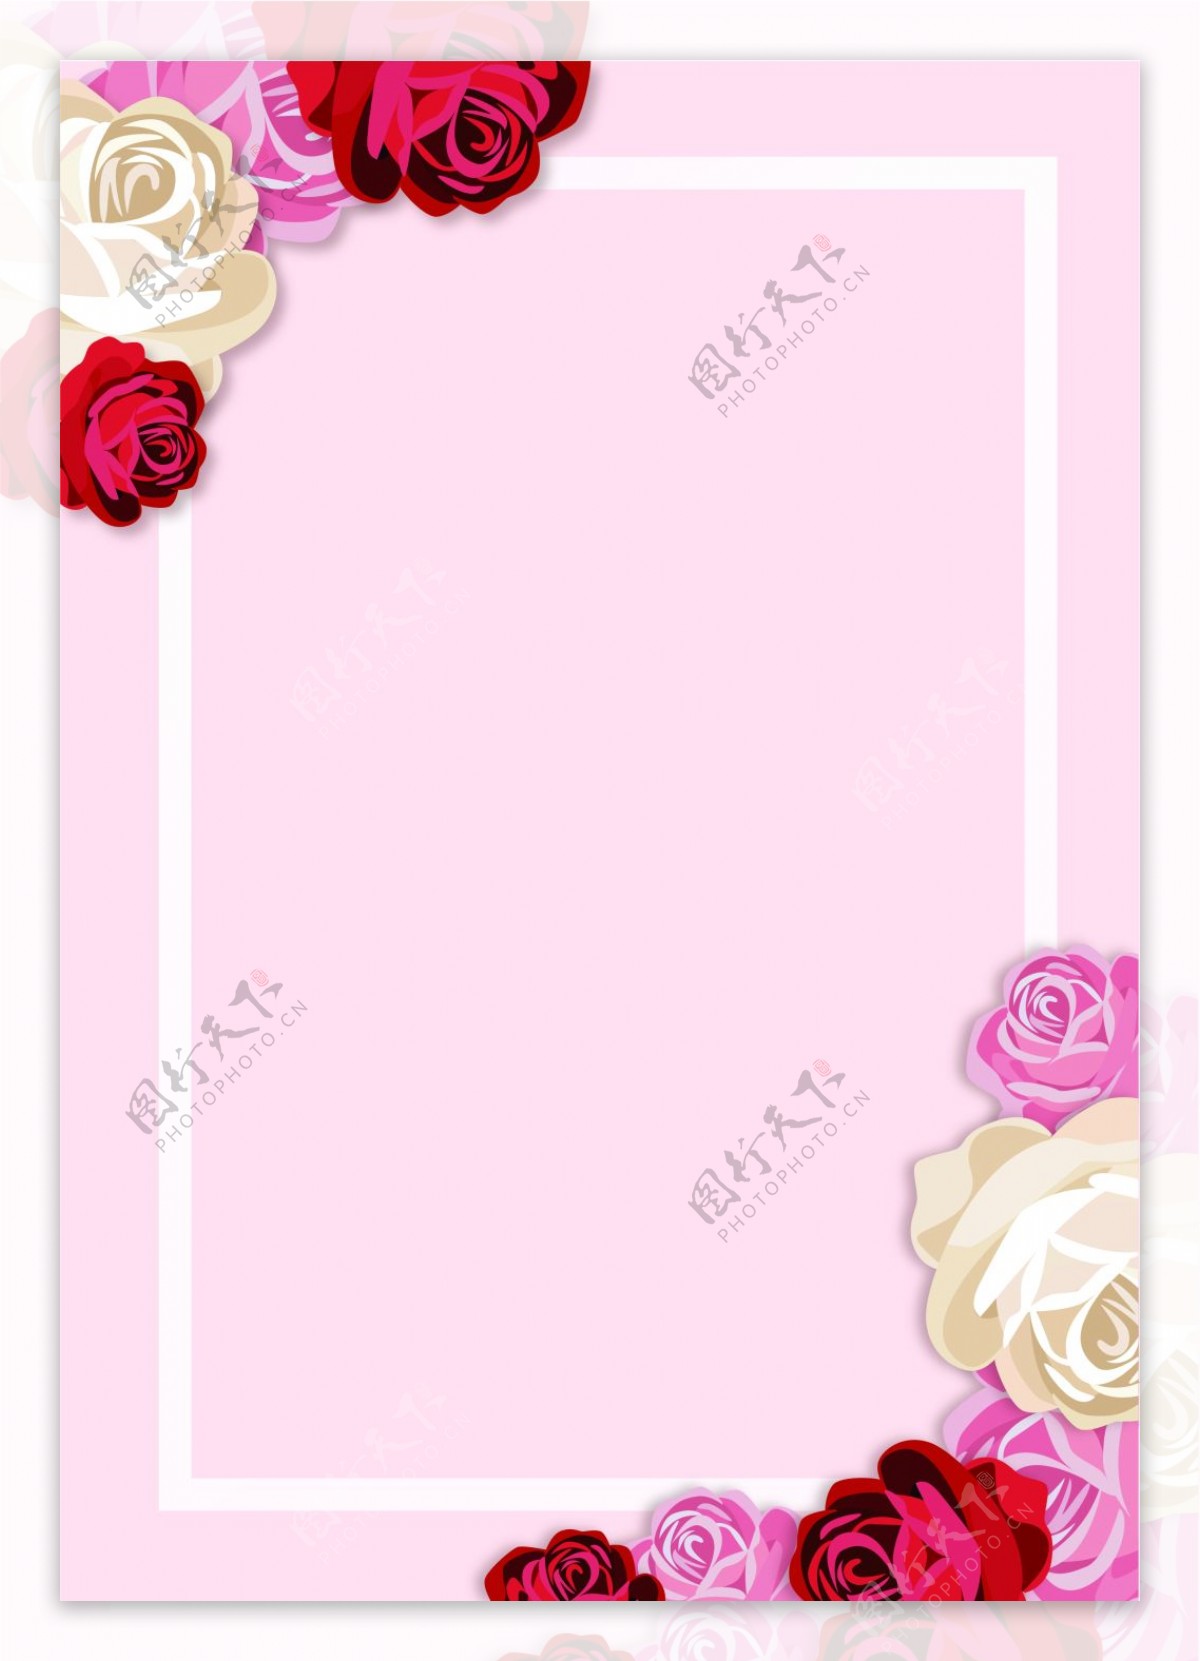 矢量粉色手绘玫瑰花边框背景